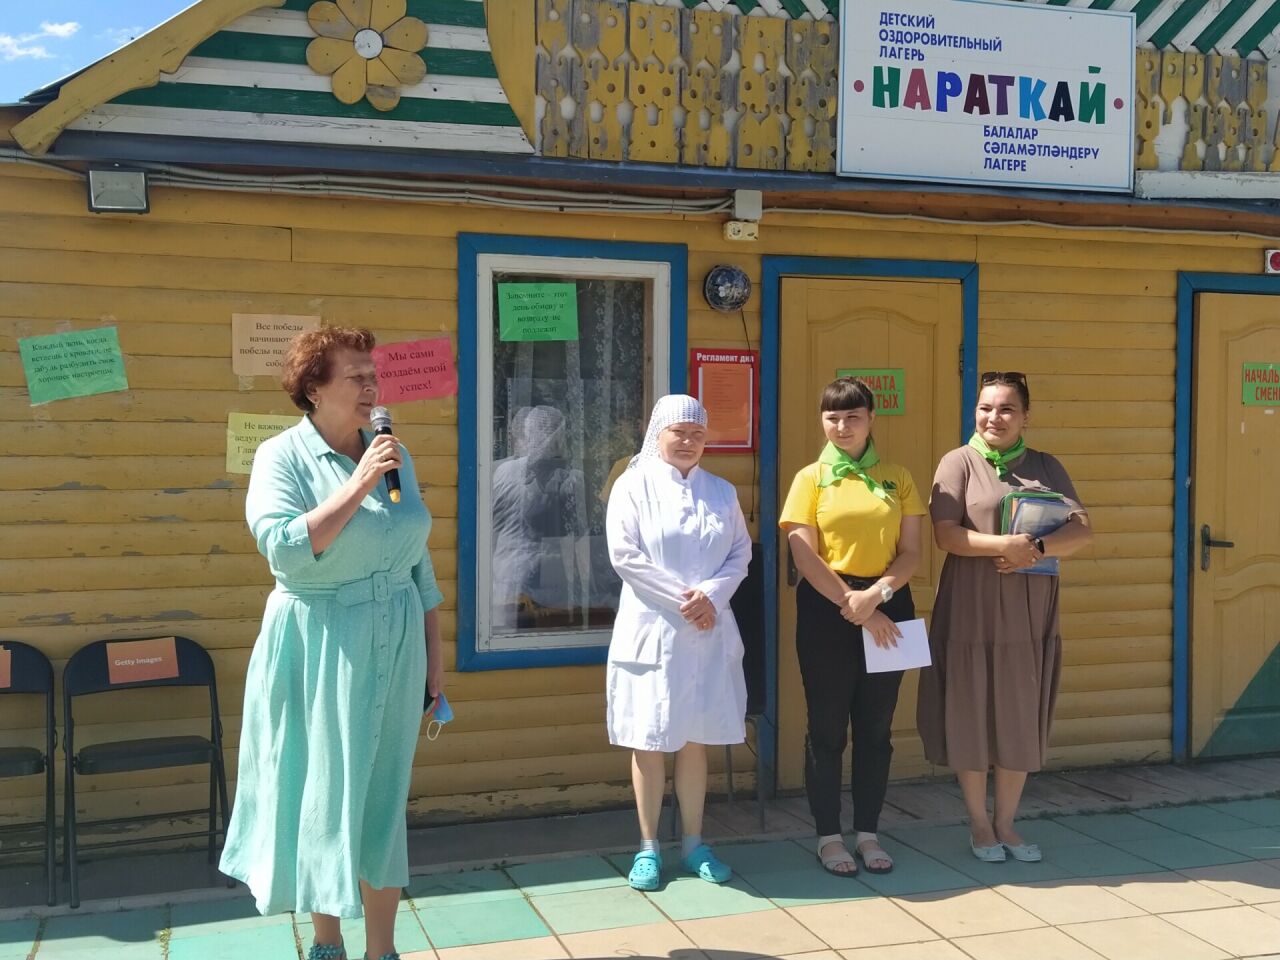 Римма Ратникова Кукмараның «Нараткай» лагеренда балаларның ялын оештыру белән танышты